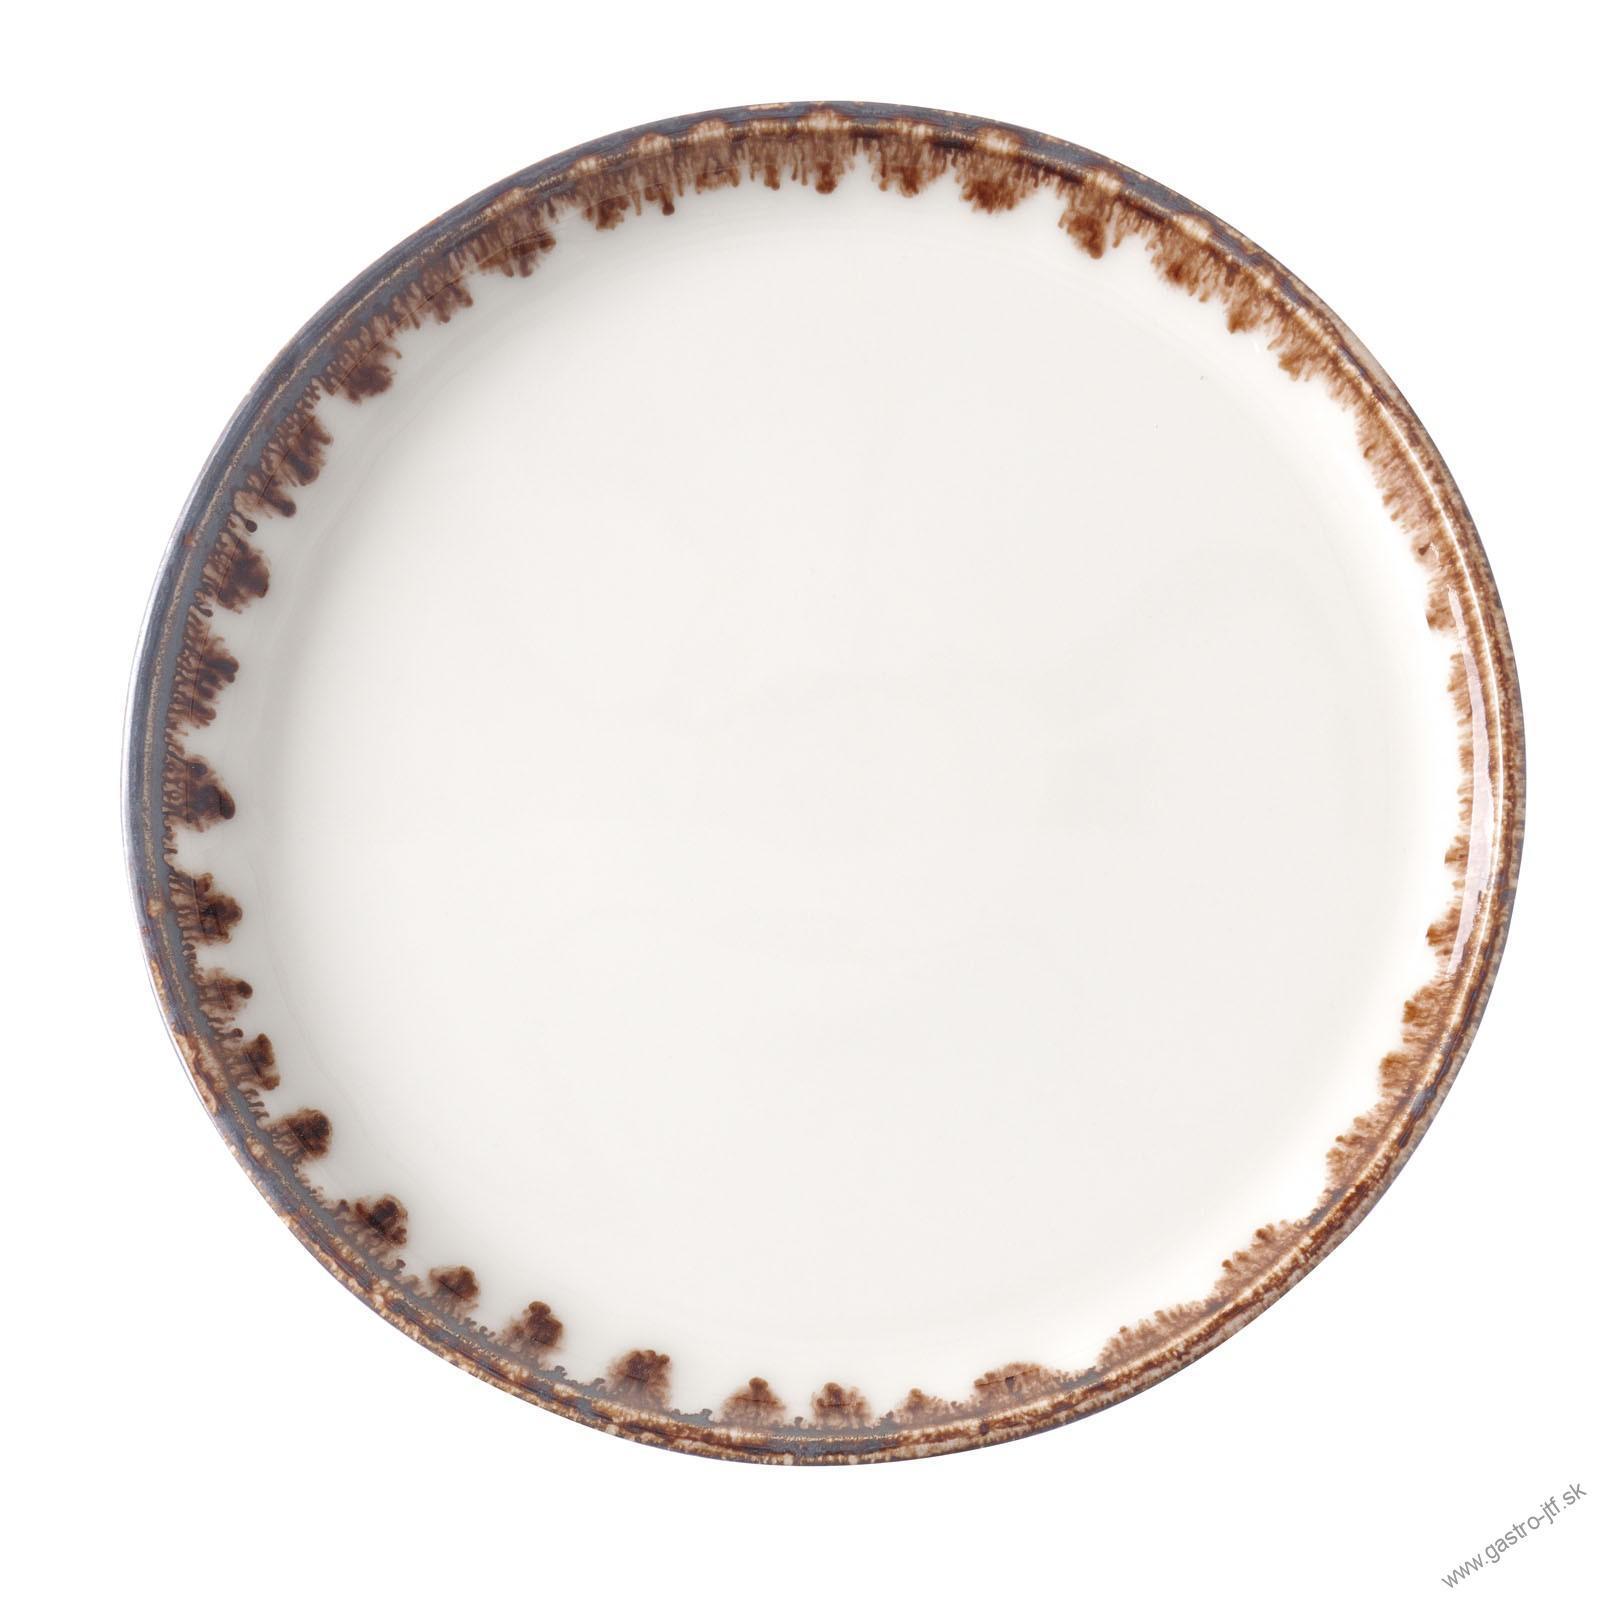 Vanilla flat plate, 260mm